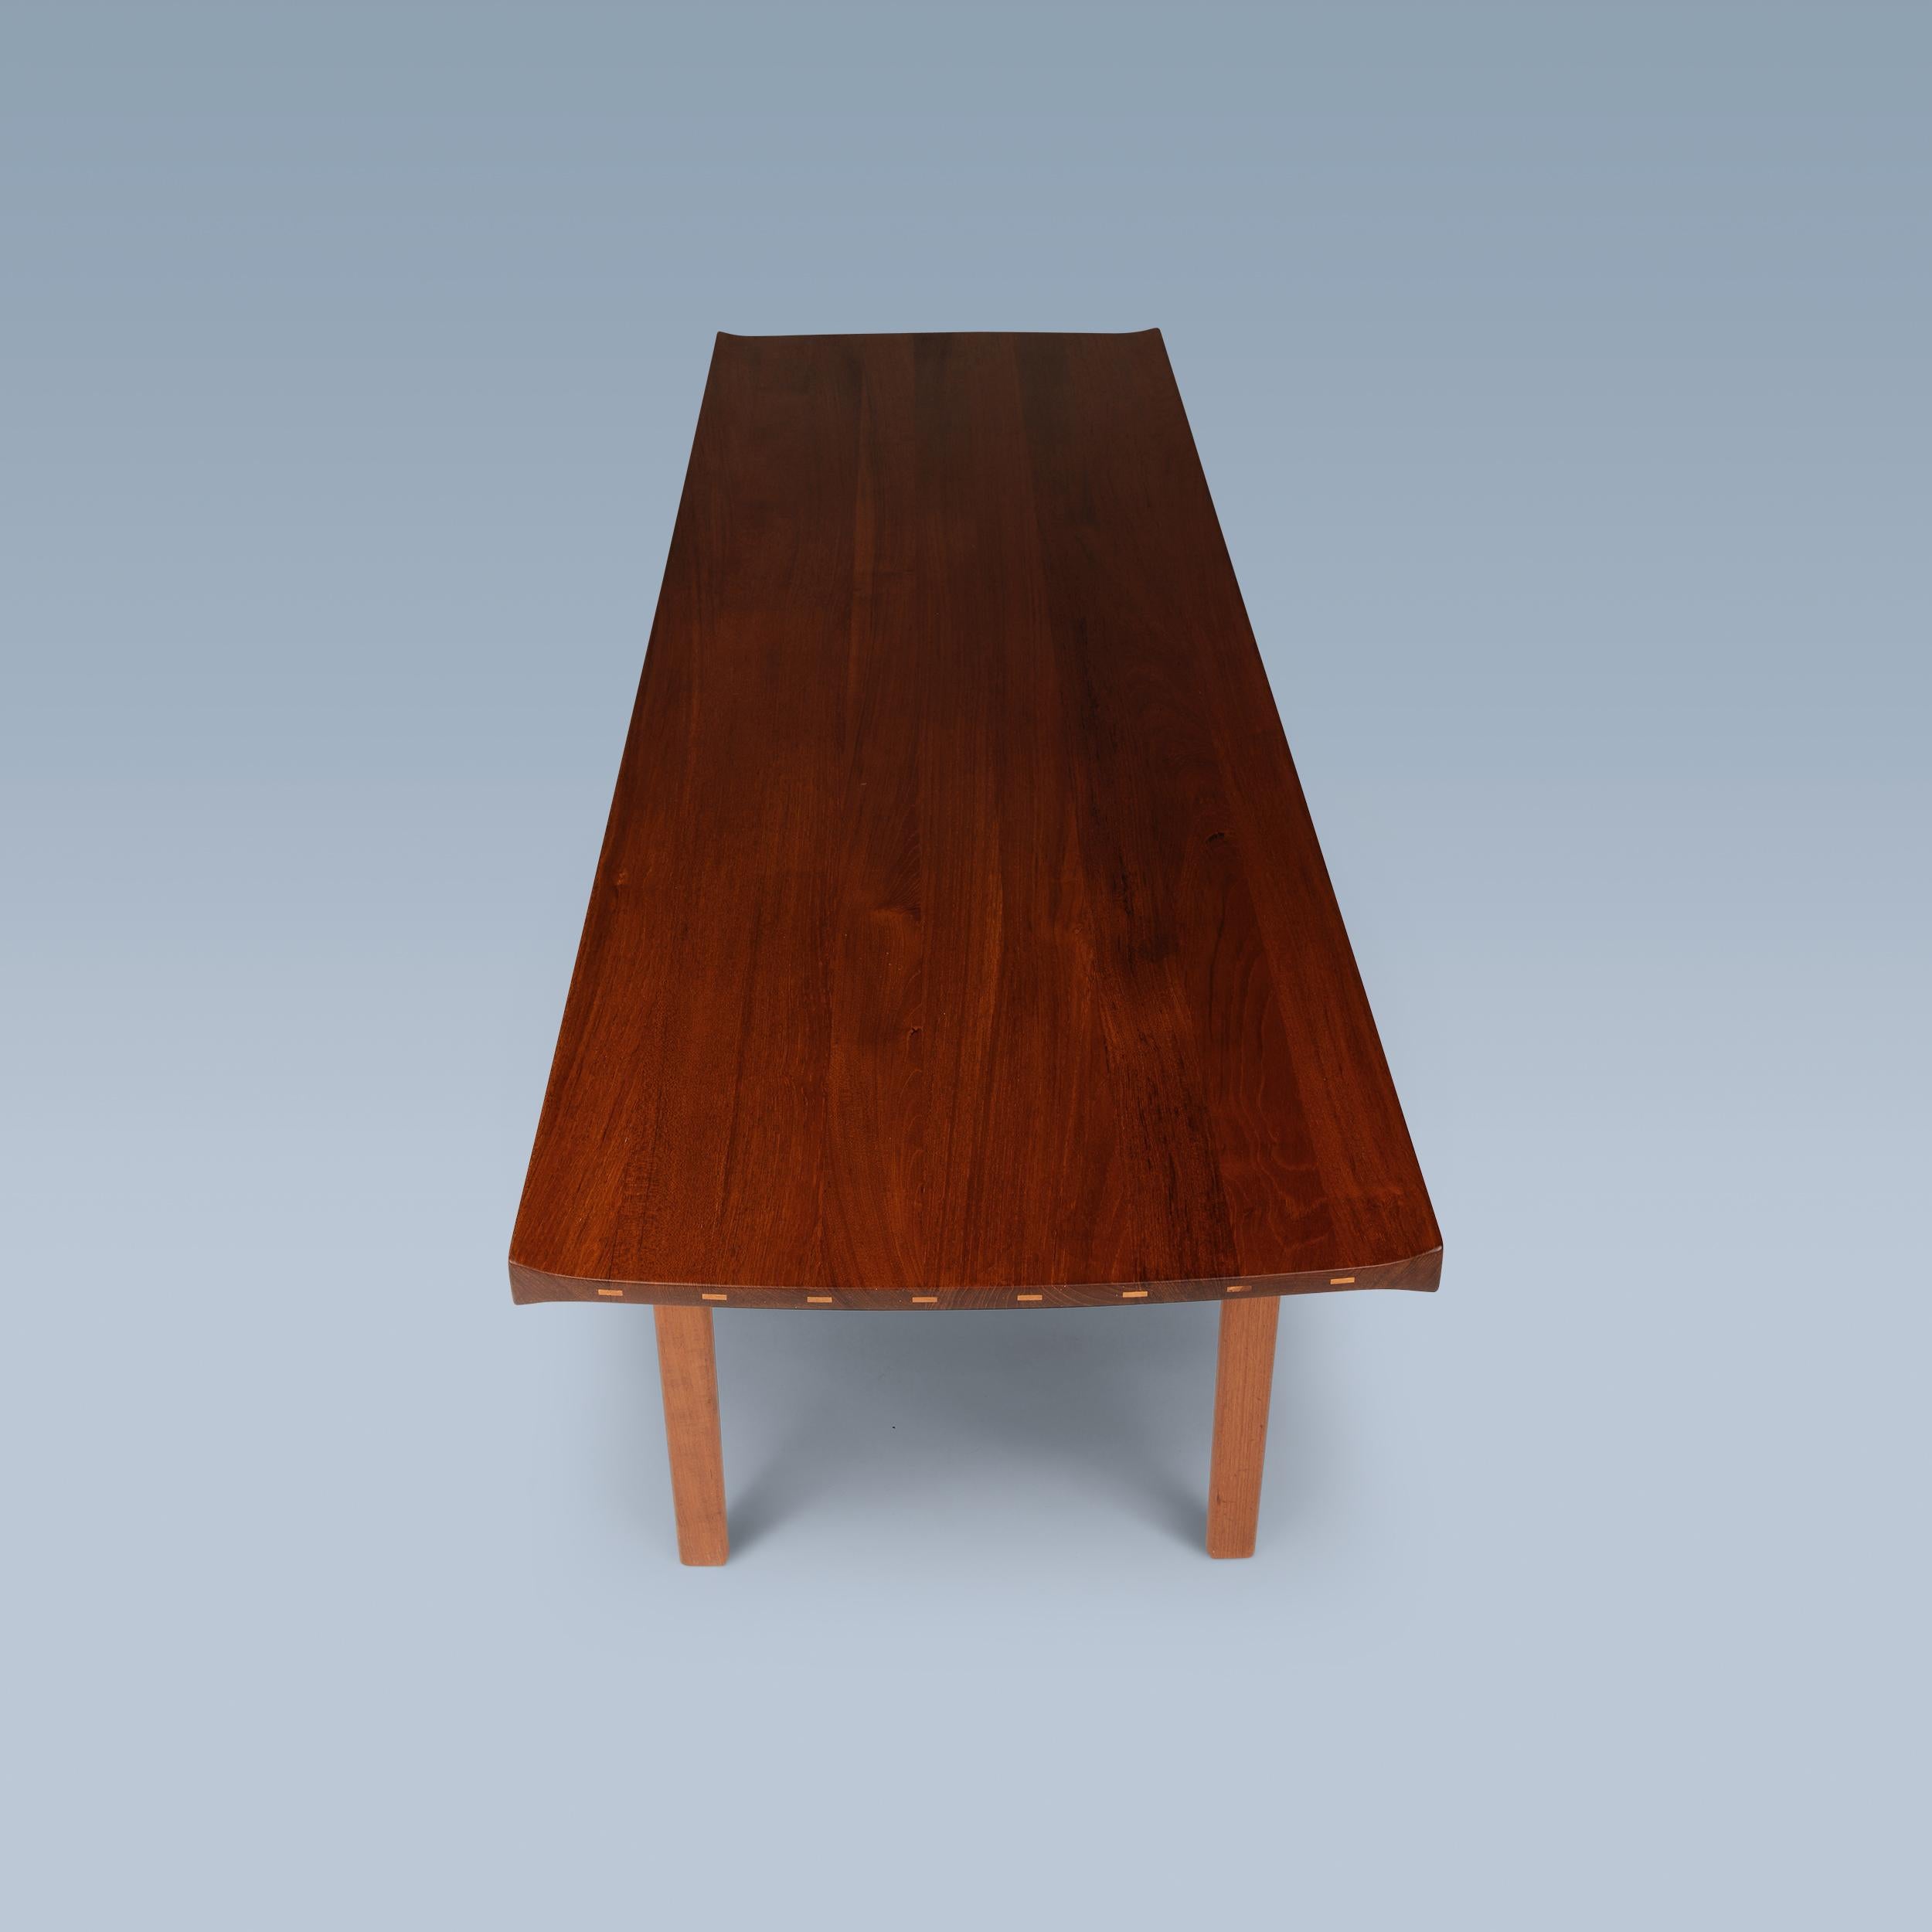 Cette table basse en teck avec des détails contrastés en bouleau est une création de Tove og Edvard Kindt-Larsen.
Ce sont les architectes danois Tove & Edvard Kindt-Larsen, mari et femme, qui l'ont conçu pour le fabricant de meubles suédois Säffle